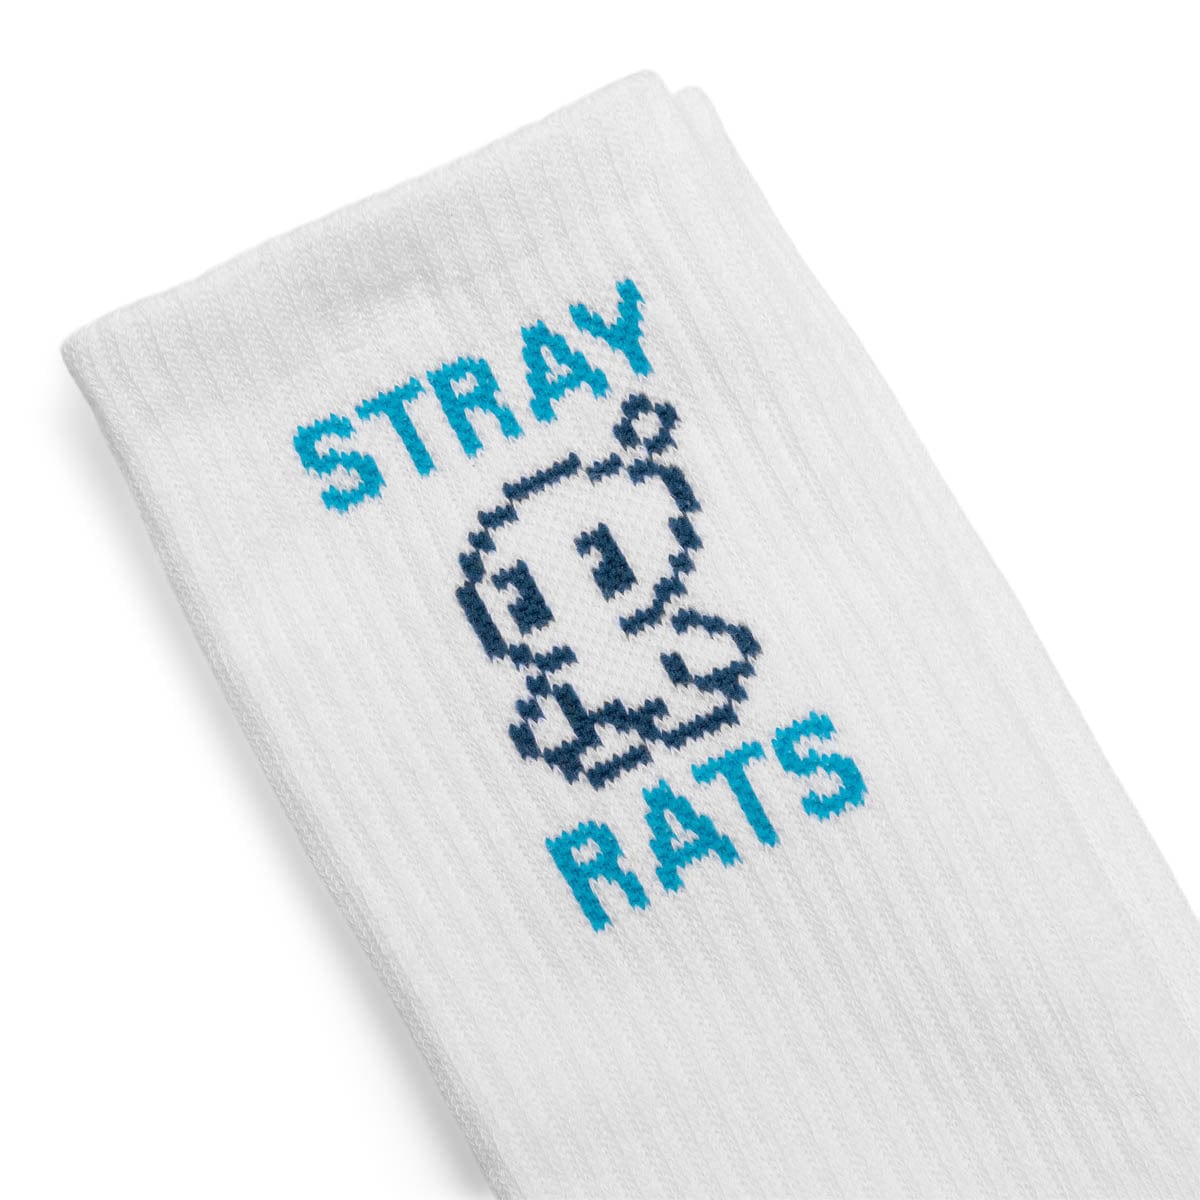 Stray Rats Socks WHITE / O/S CHAO SOCKS